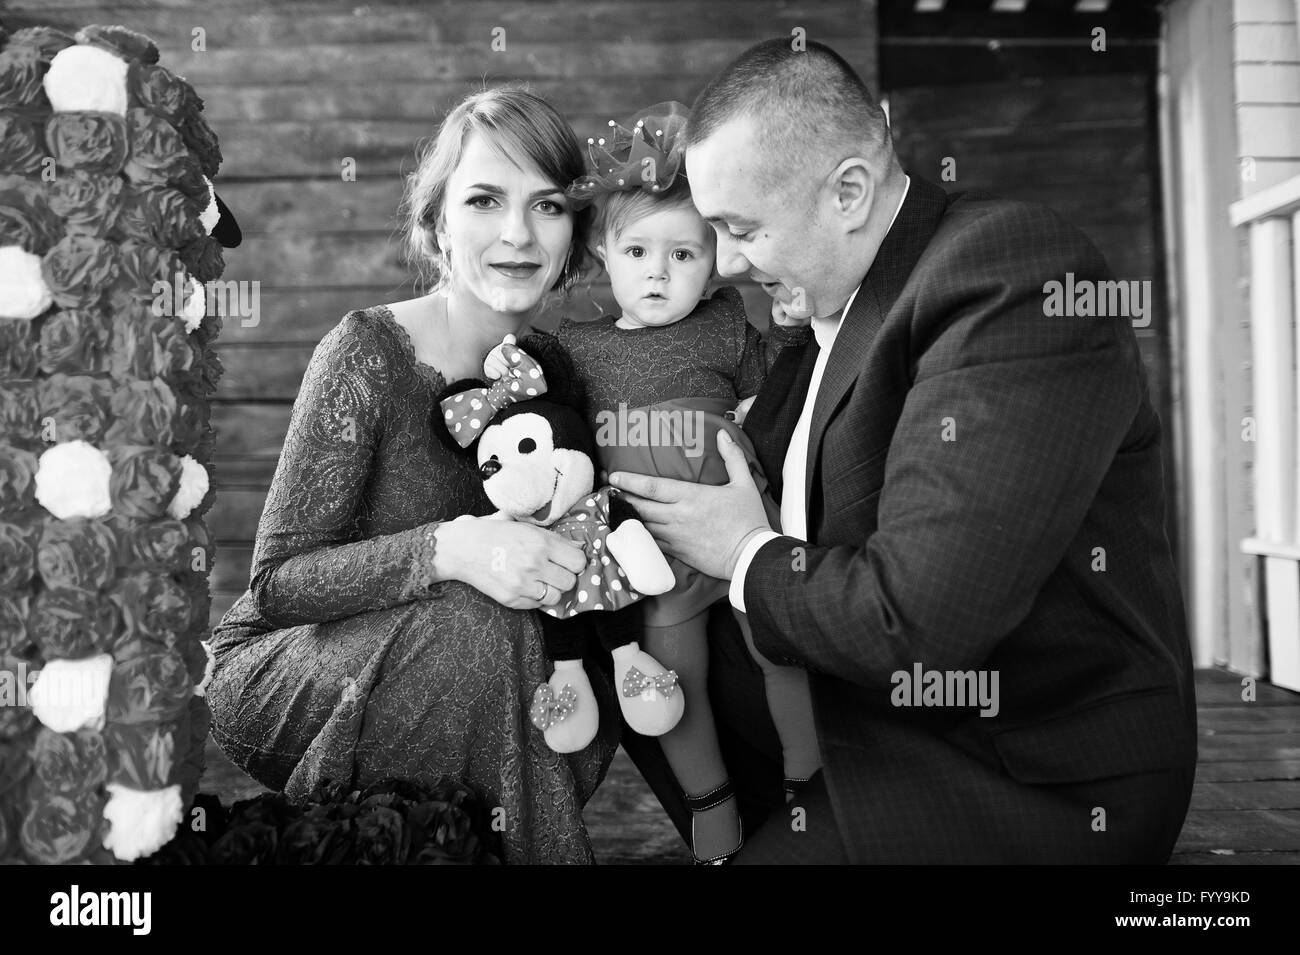 Famille heureuse et sa fille avec 1 an d'anniversaire faites à la main à l'ancien numéro de décor maison en bois. Photo en noir et blanc Banque D'Images